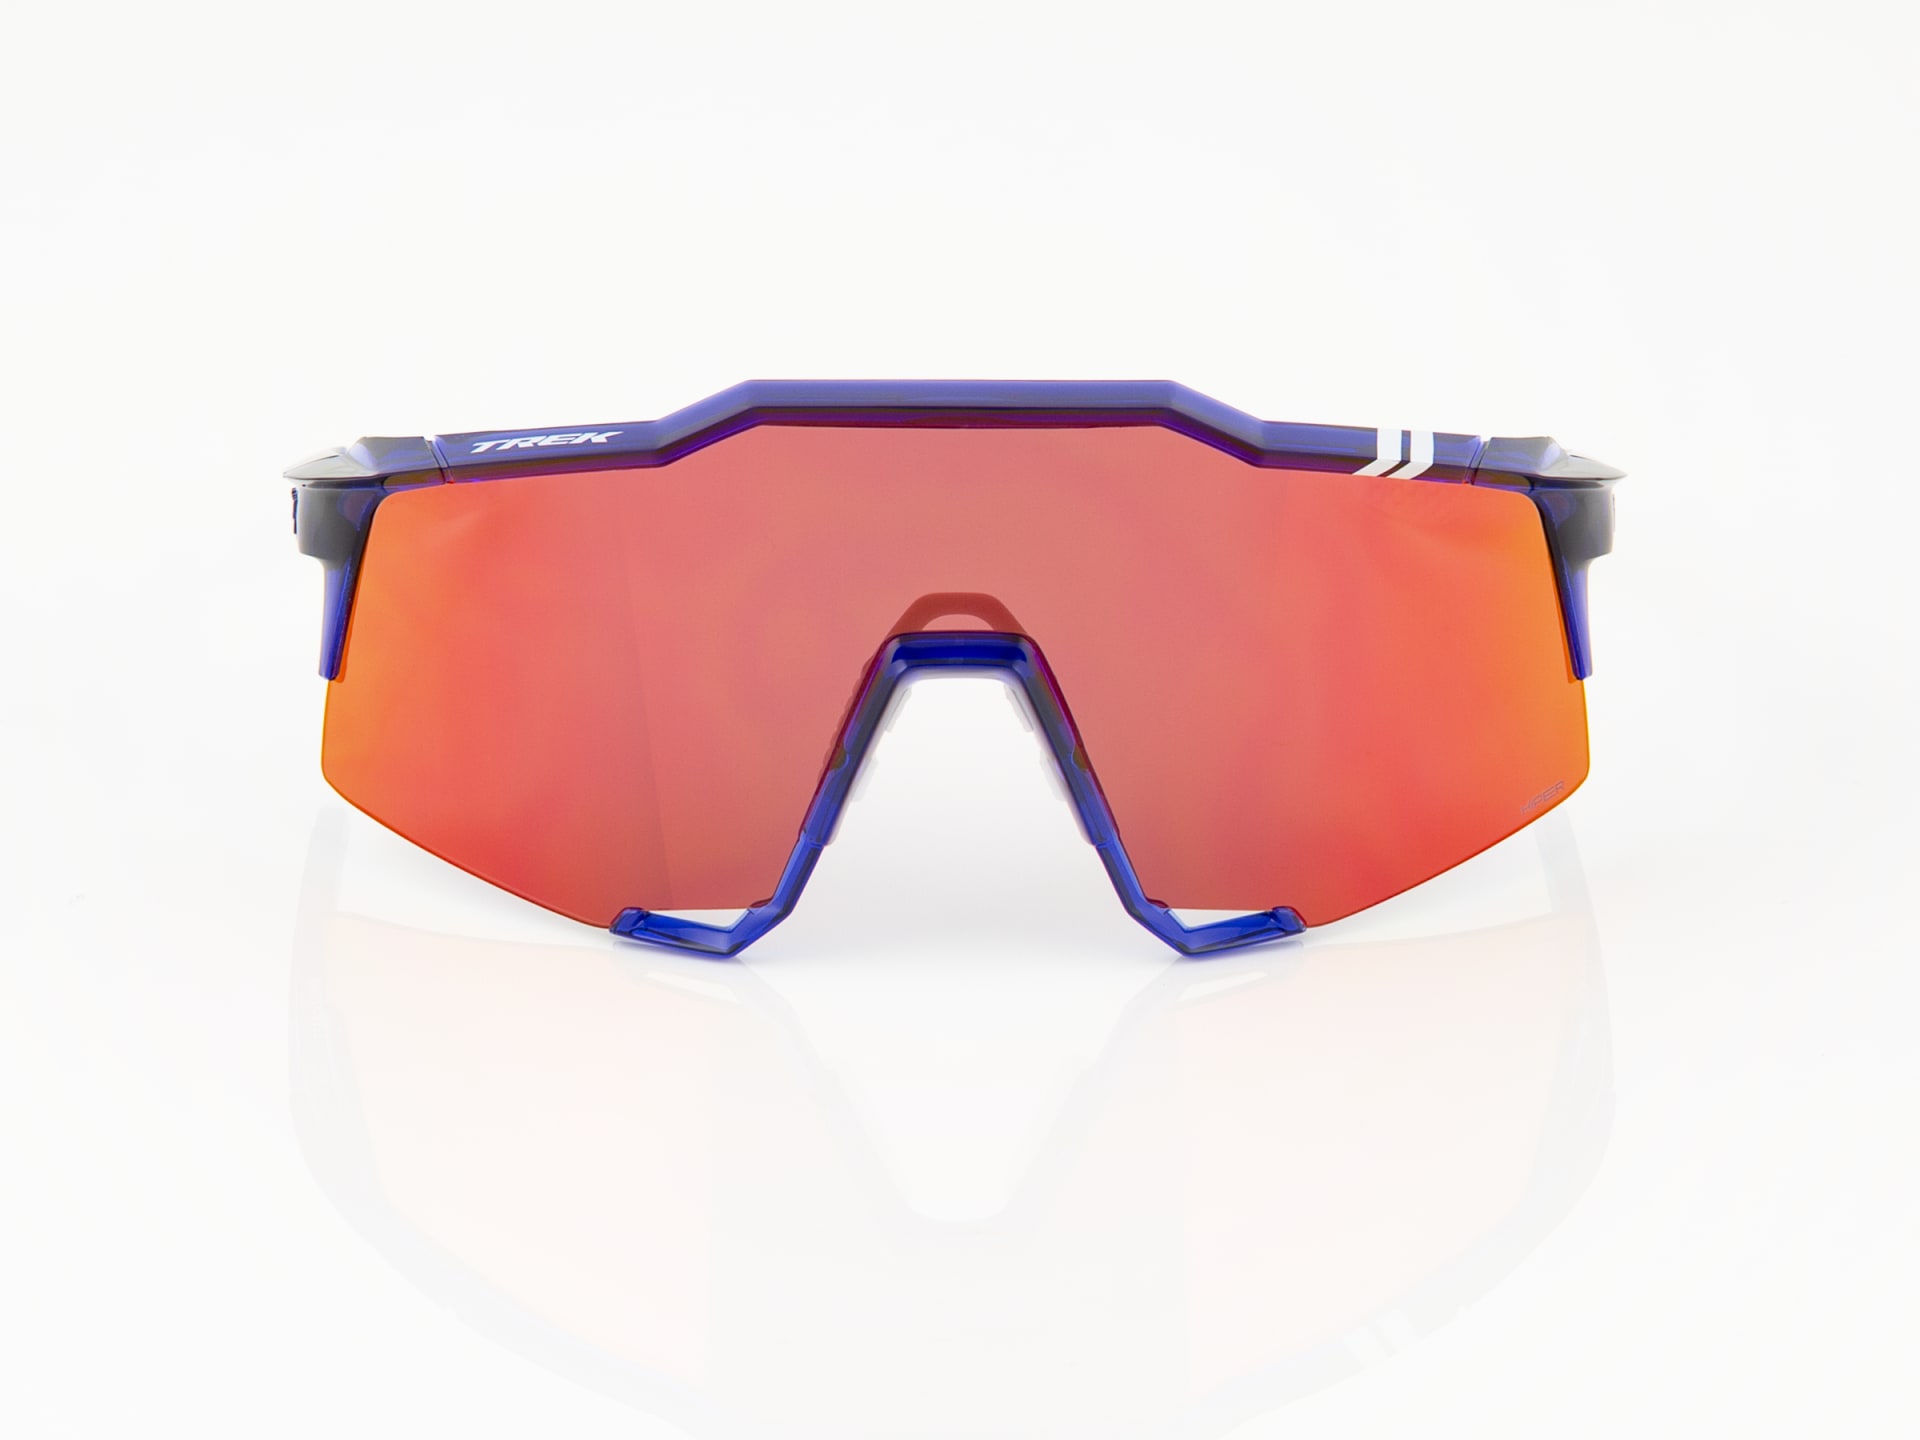 100% Trek Team Edition Speedcraft HiPER Lens Sunglasses